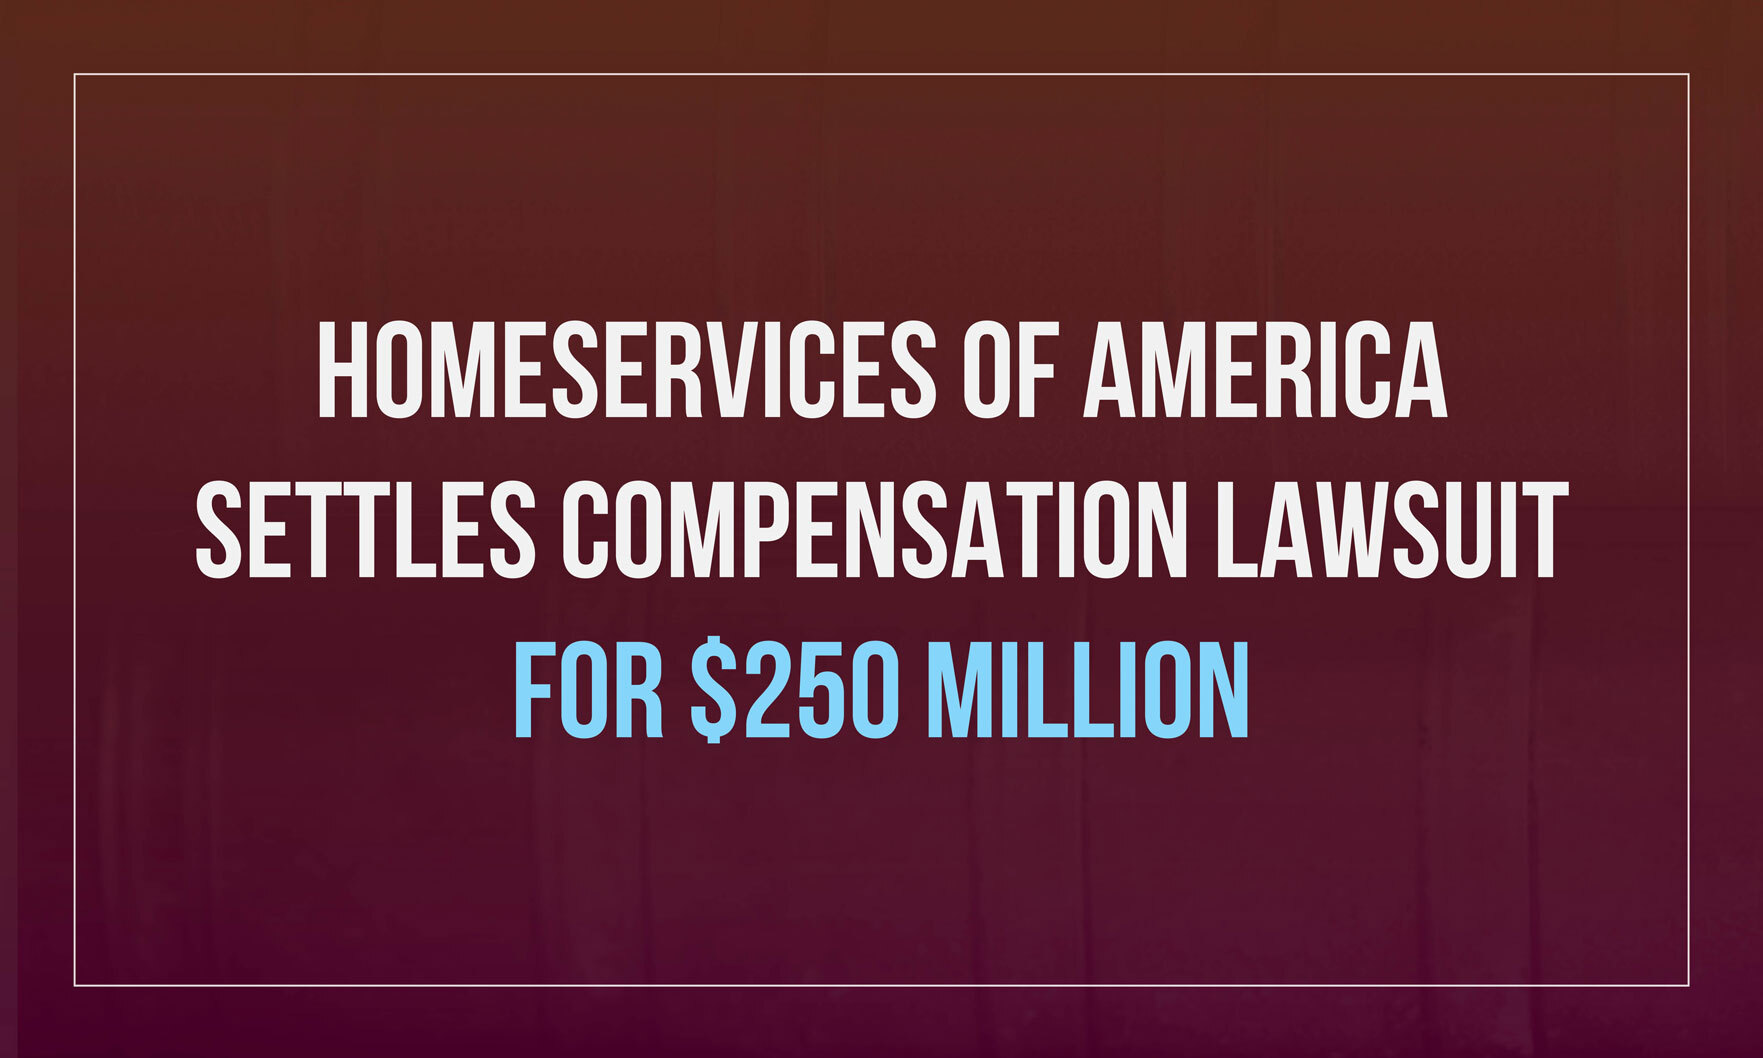 Warren Buffett’s HomeServices of America settles compensation lawsuit for $250 million